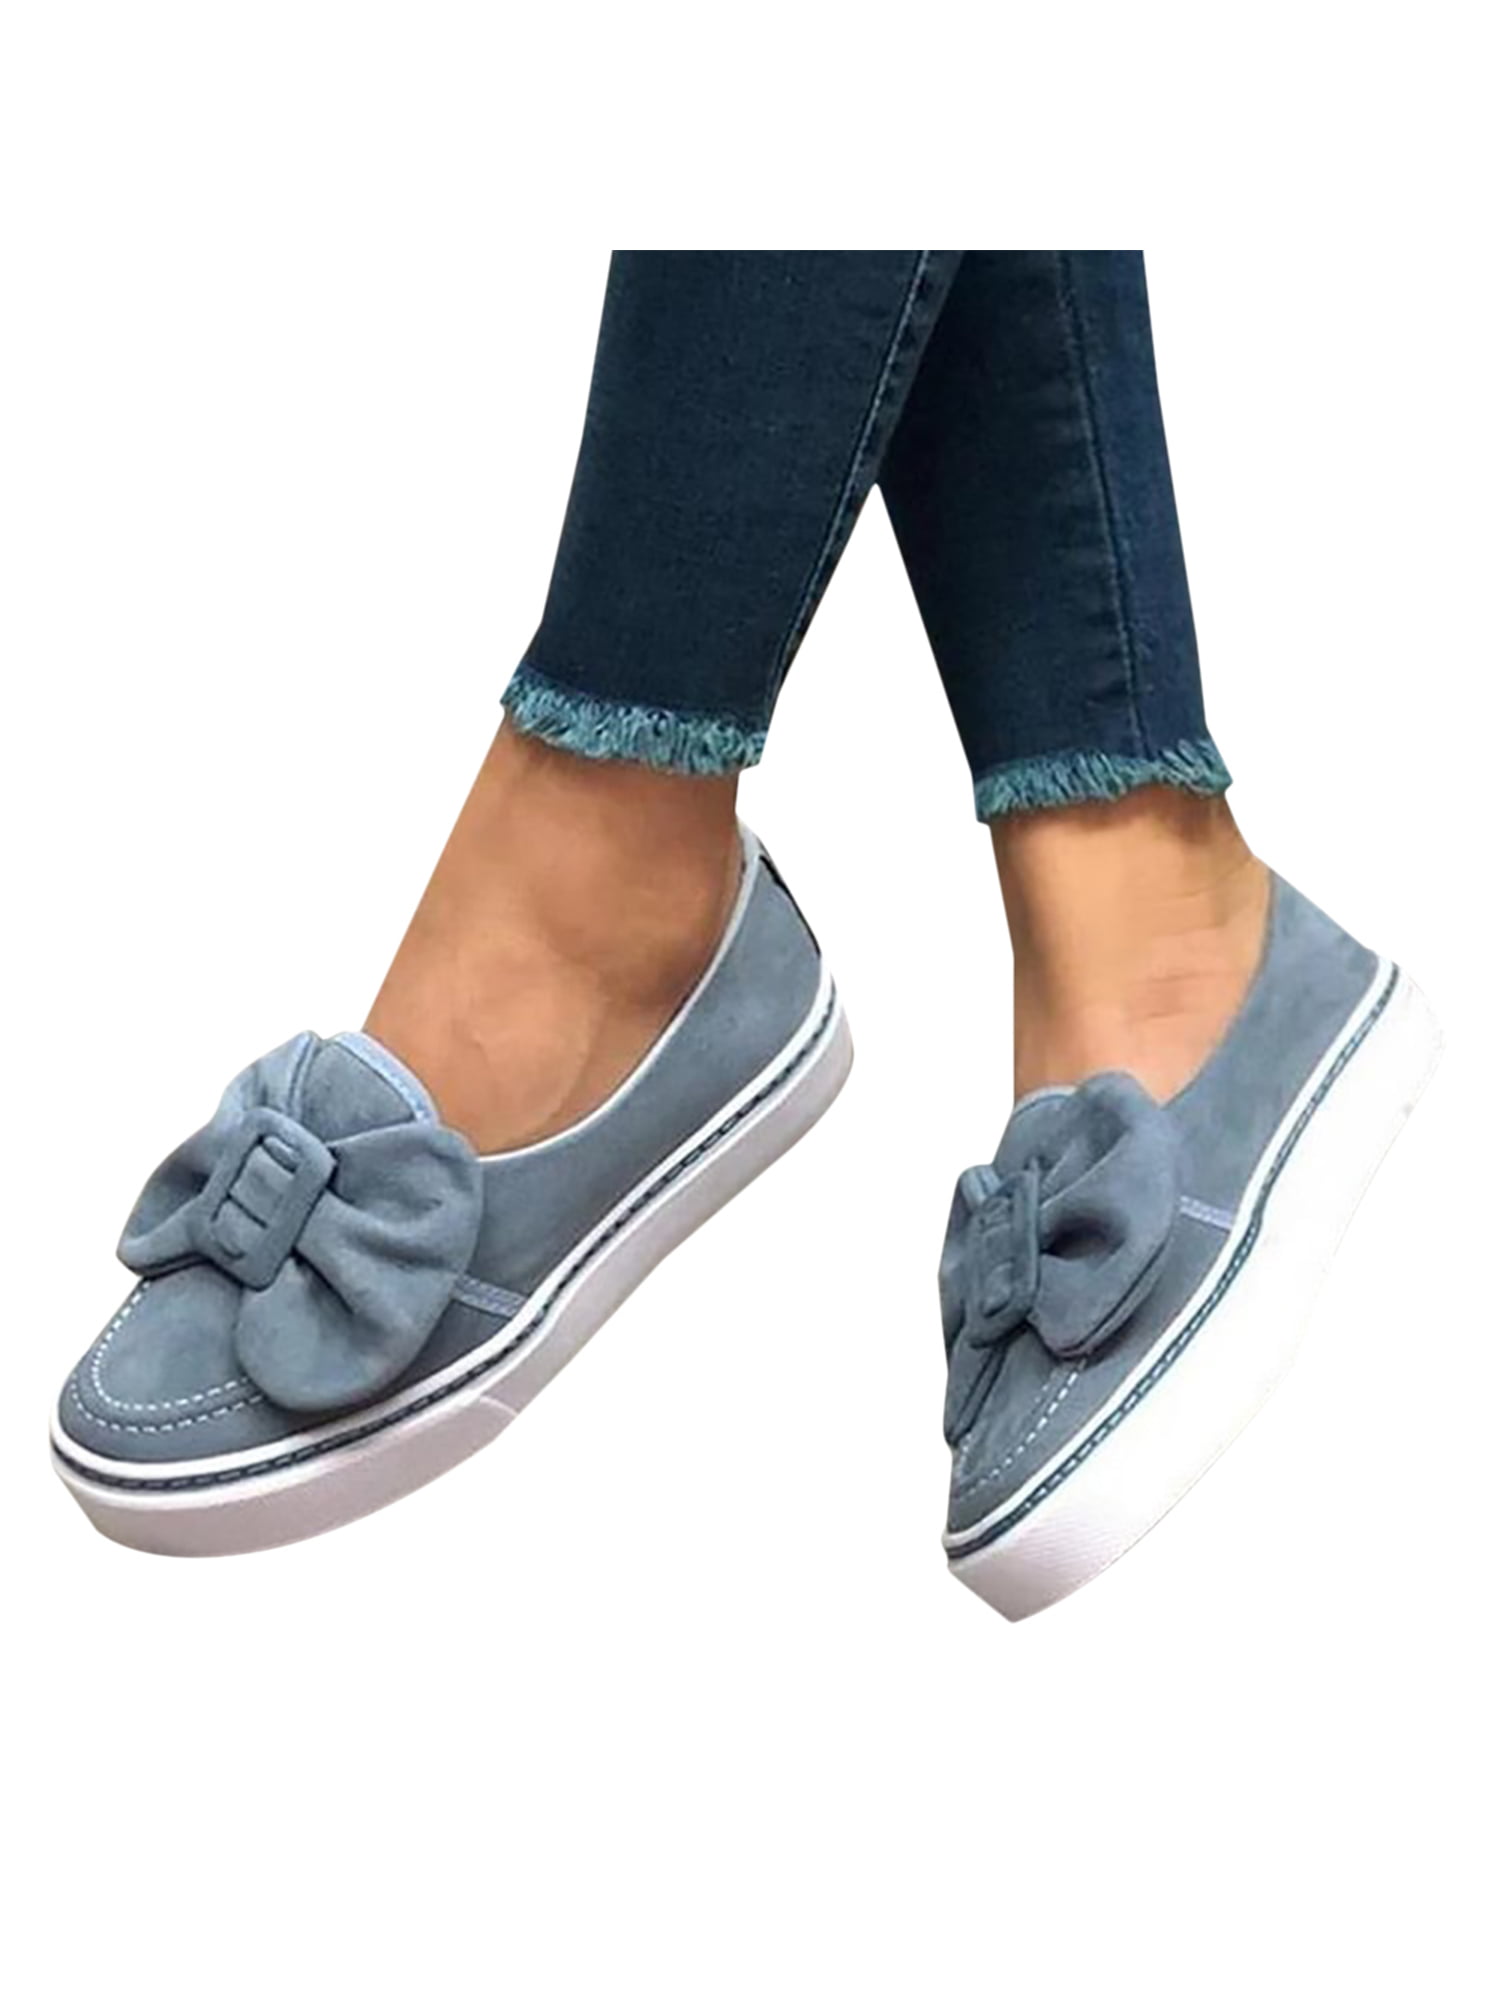 comfy platform slip on shoes